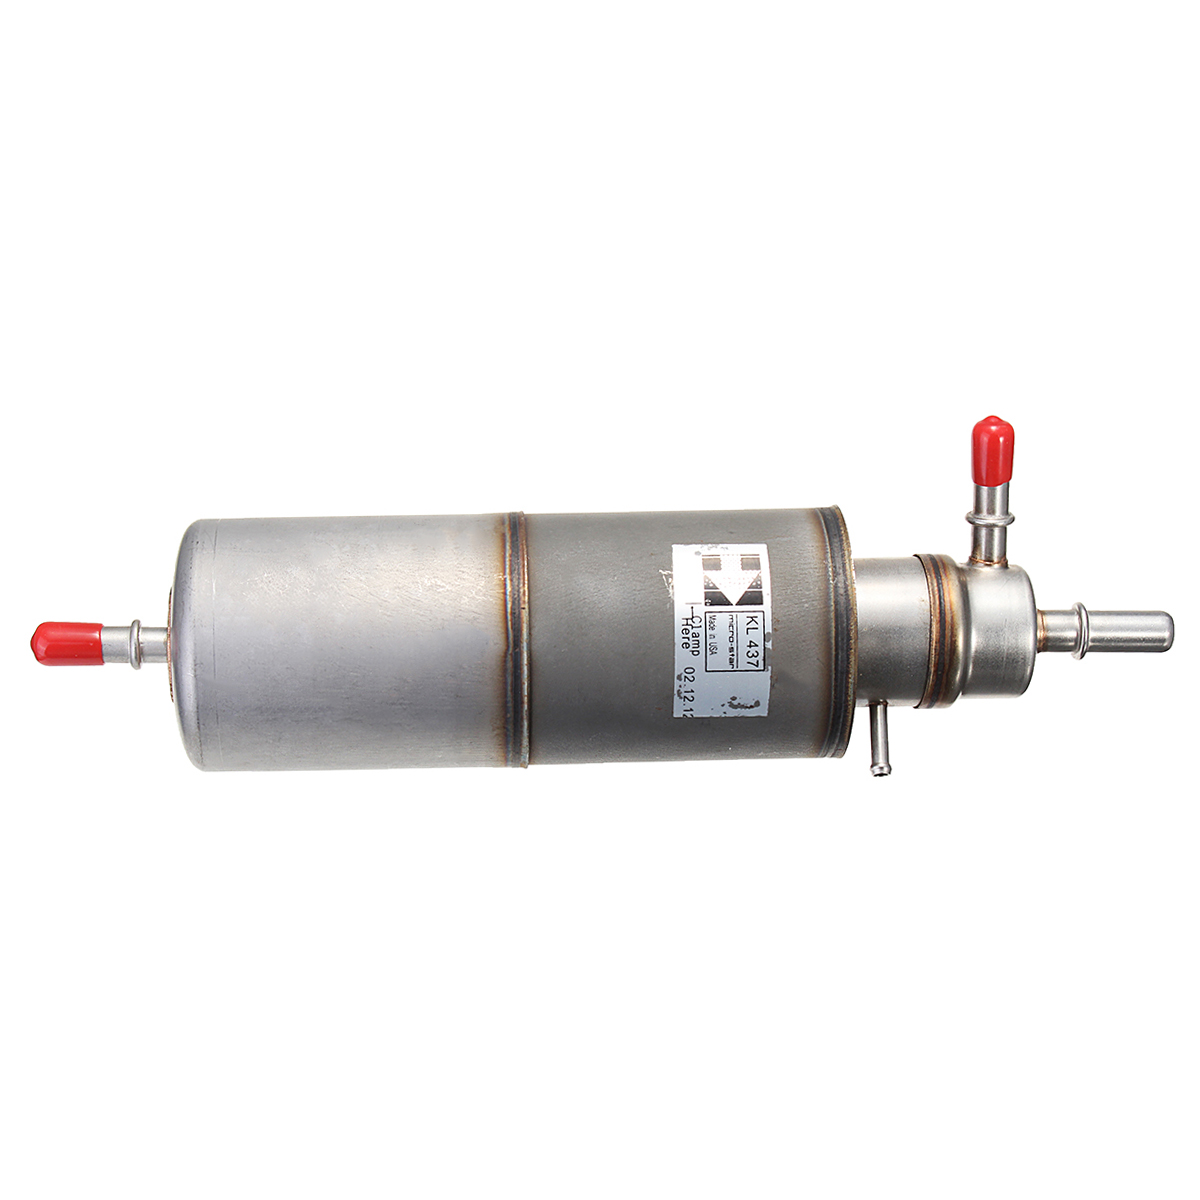 Nuevo filtro de combustible de aceite para MERCEDES modelo ML55 AMG ML320 ML430